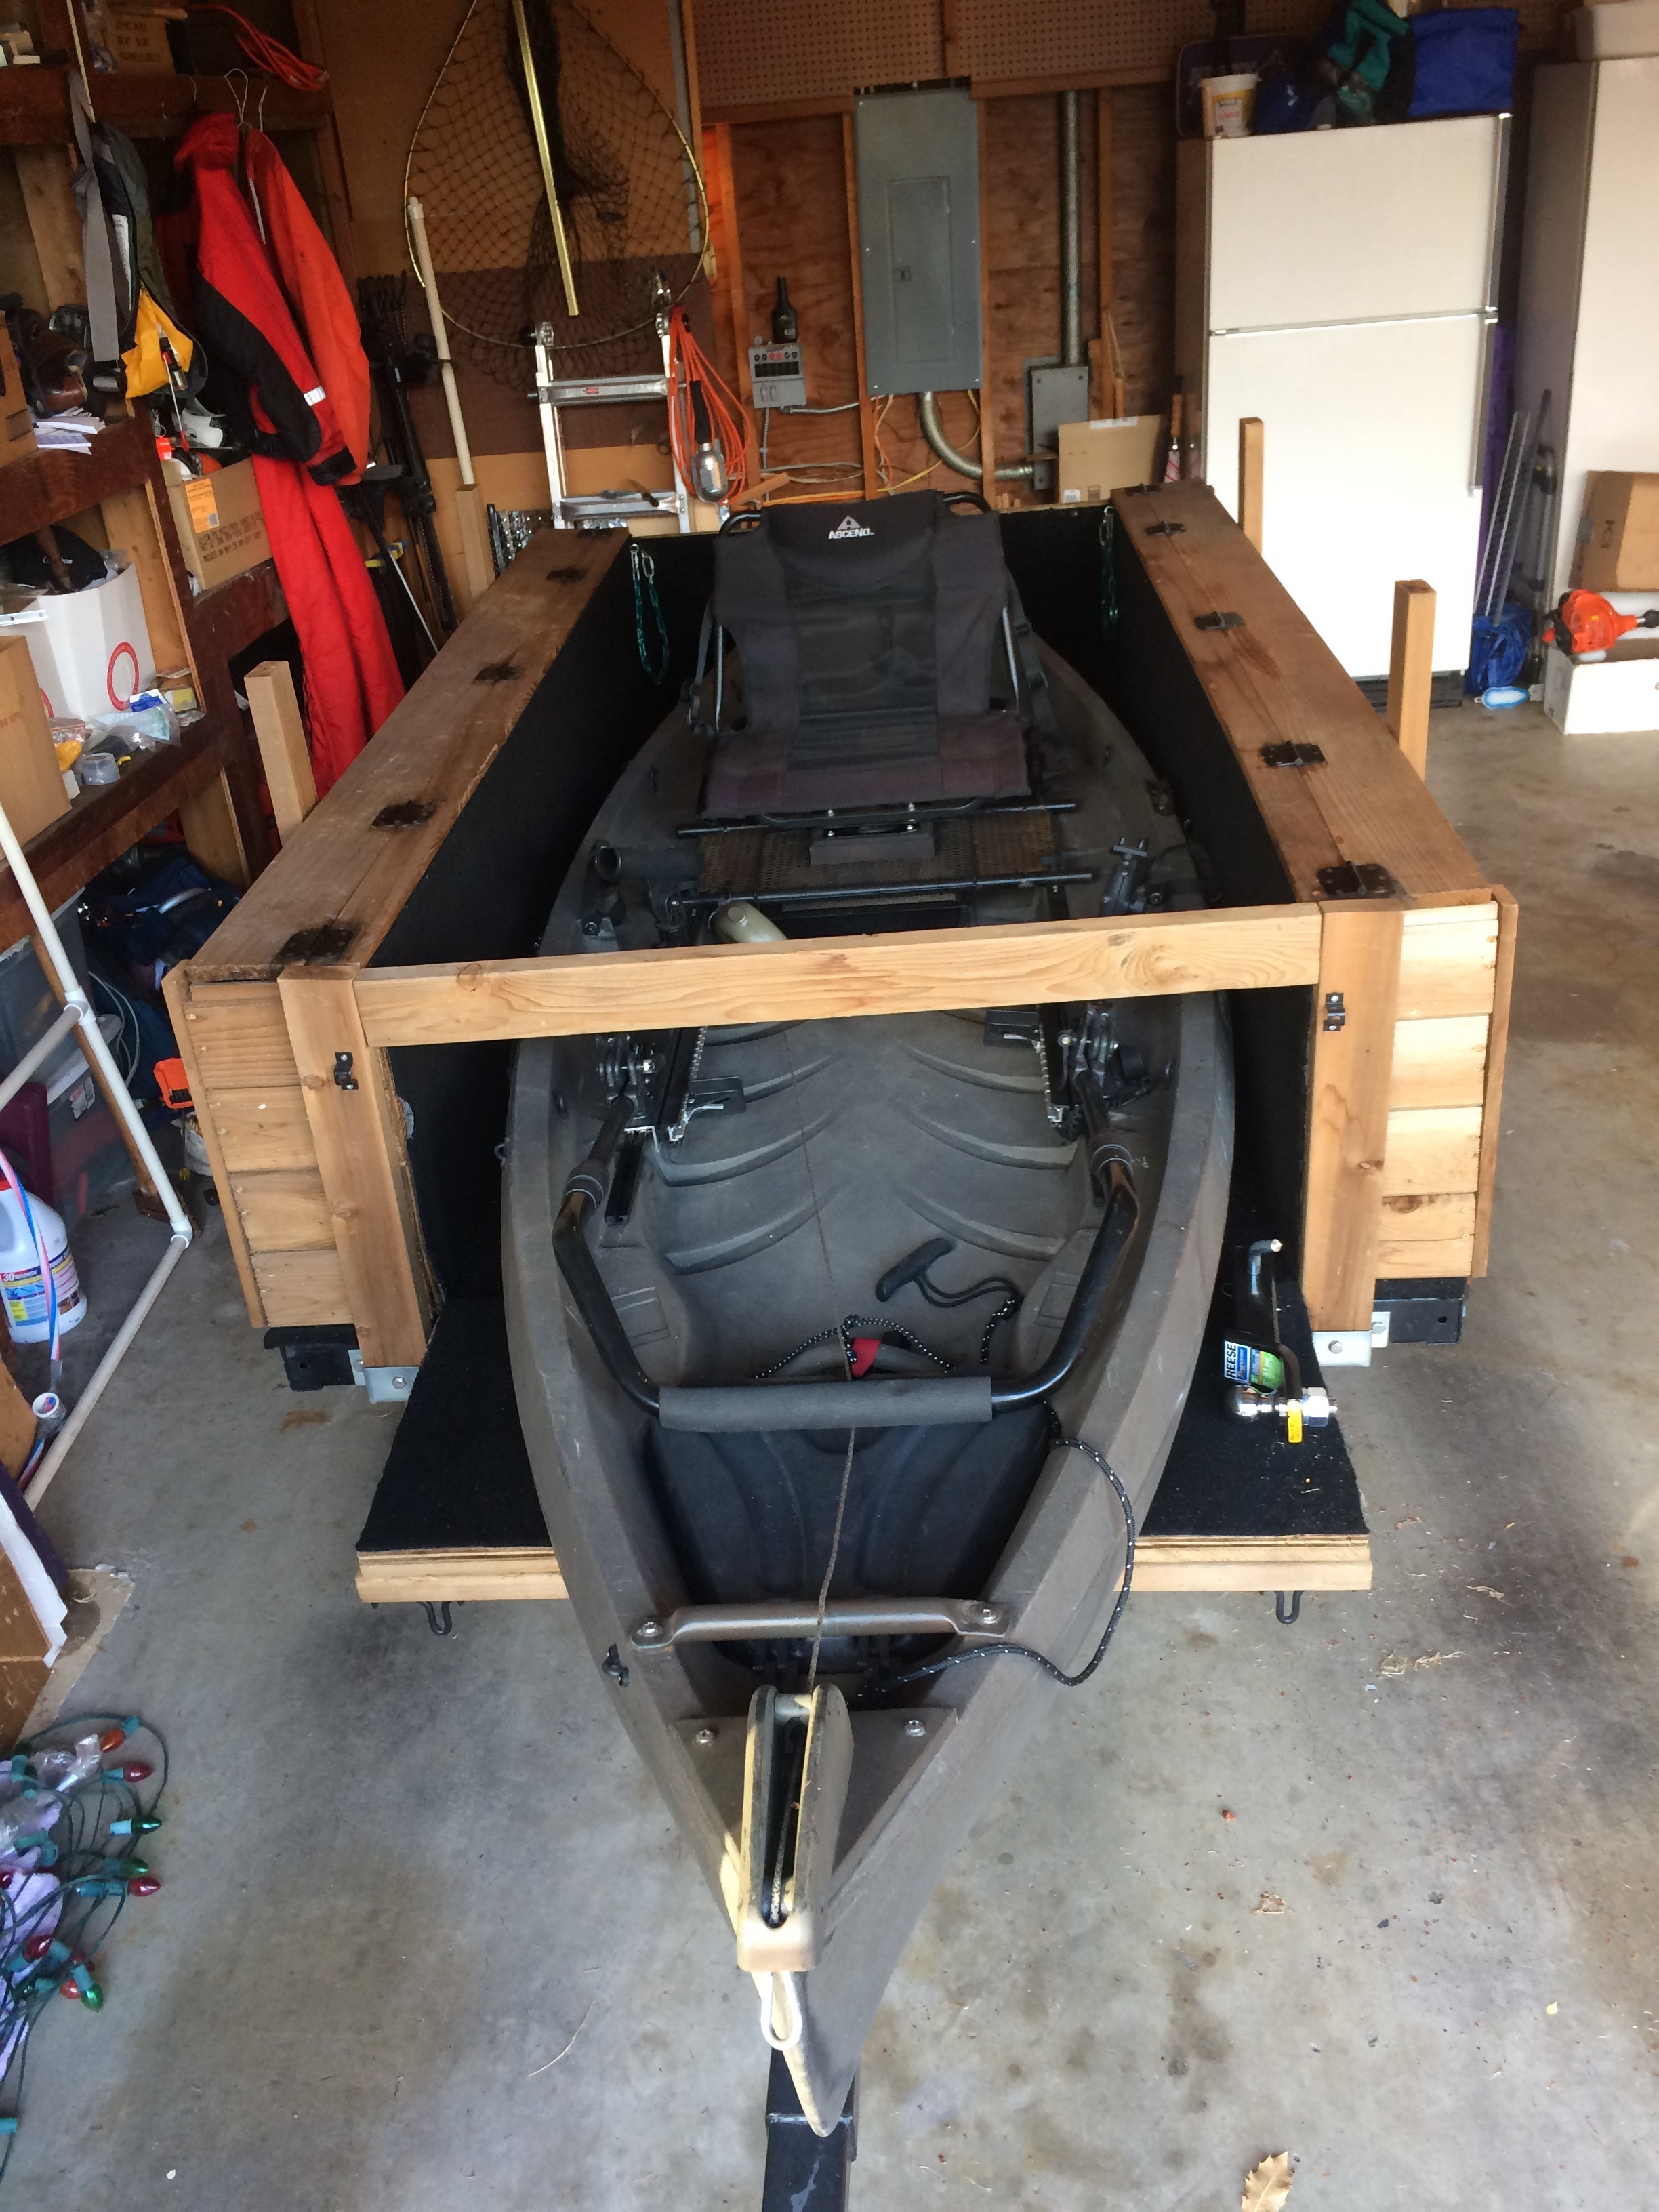 FS - Nucanoe Frontier 12 Kayak setup for fly fishing